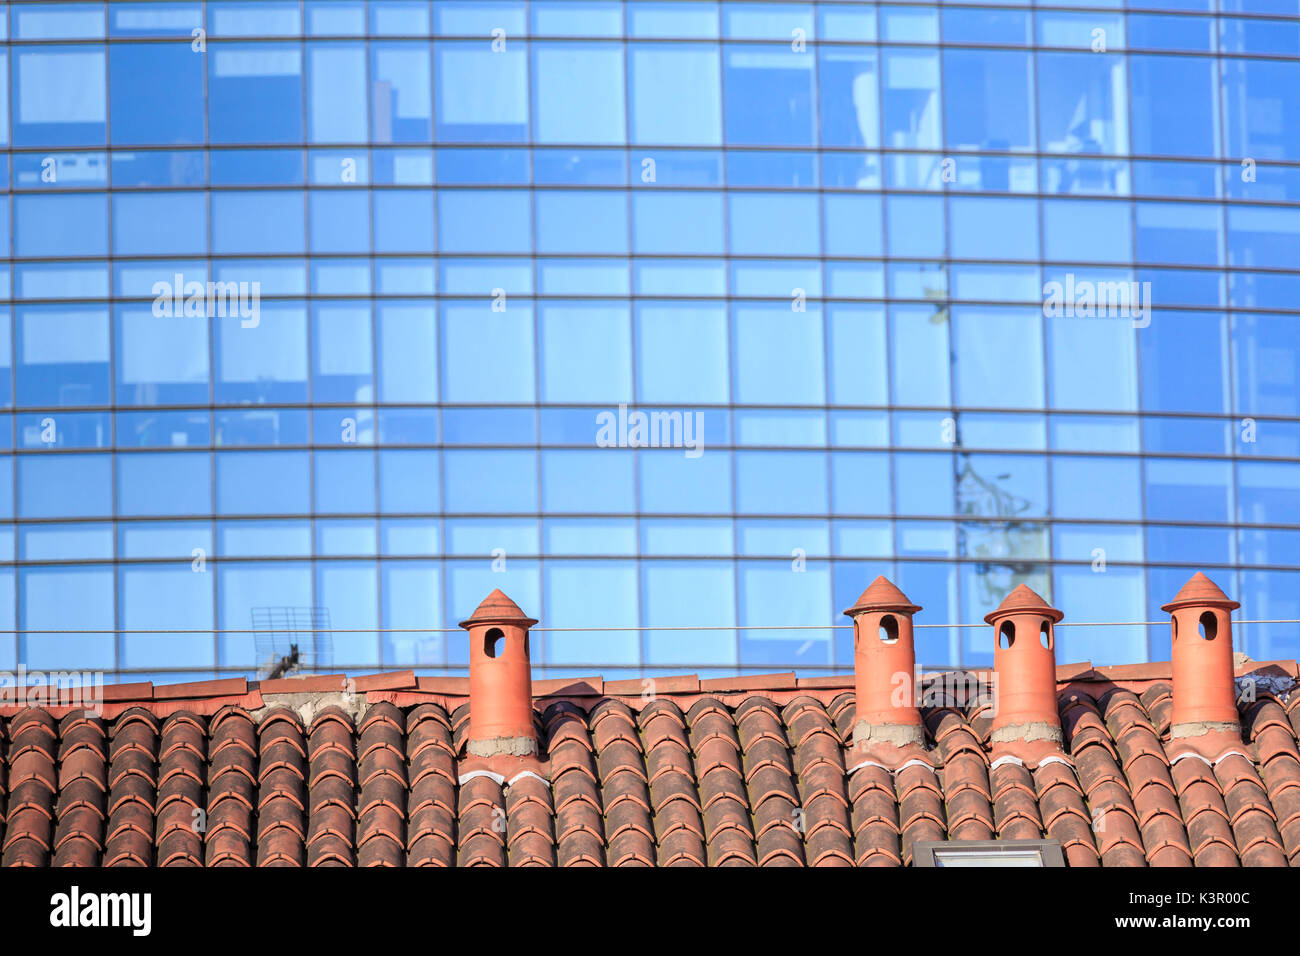 Le contraste entre les anciennes maisons typiques et de nouveaux bâtiments modernes et gratte-ciel Milan Lombardie Italie Europe Banque D'Images